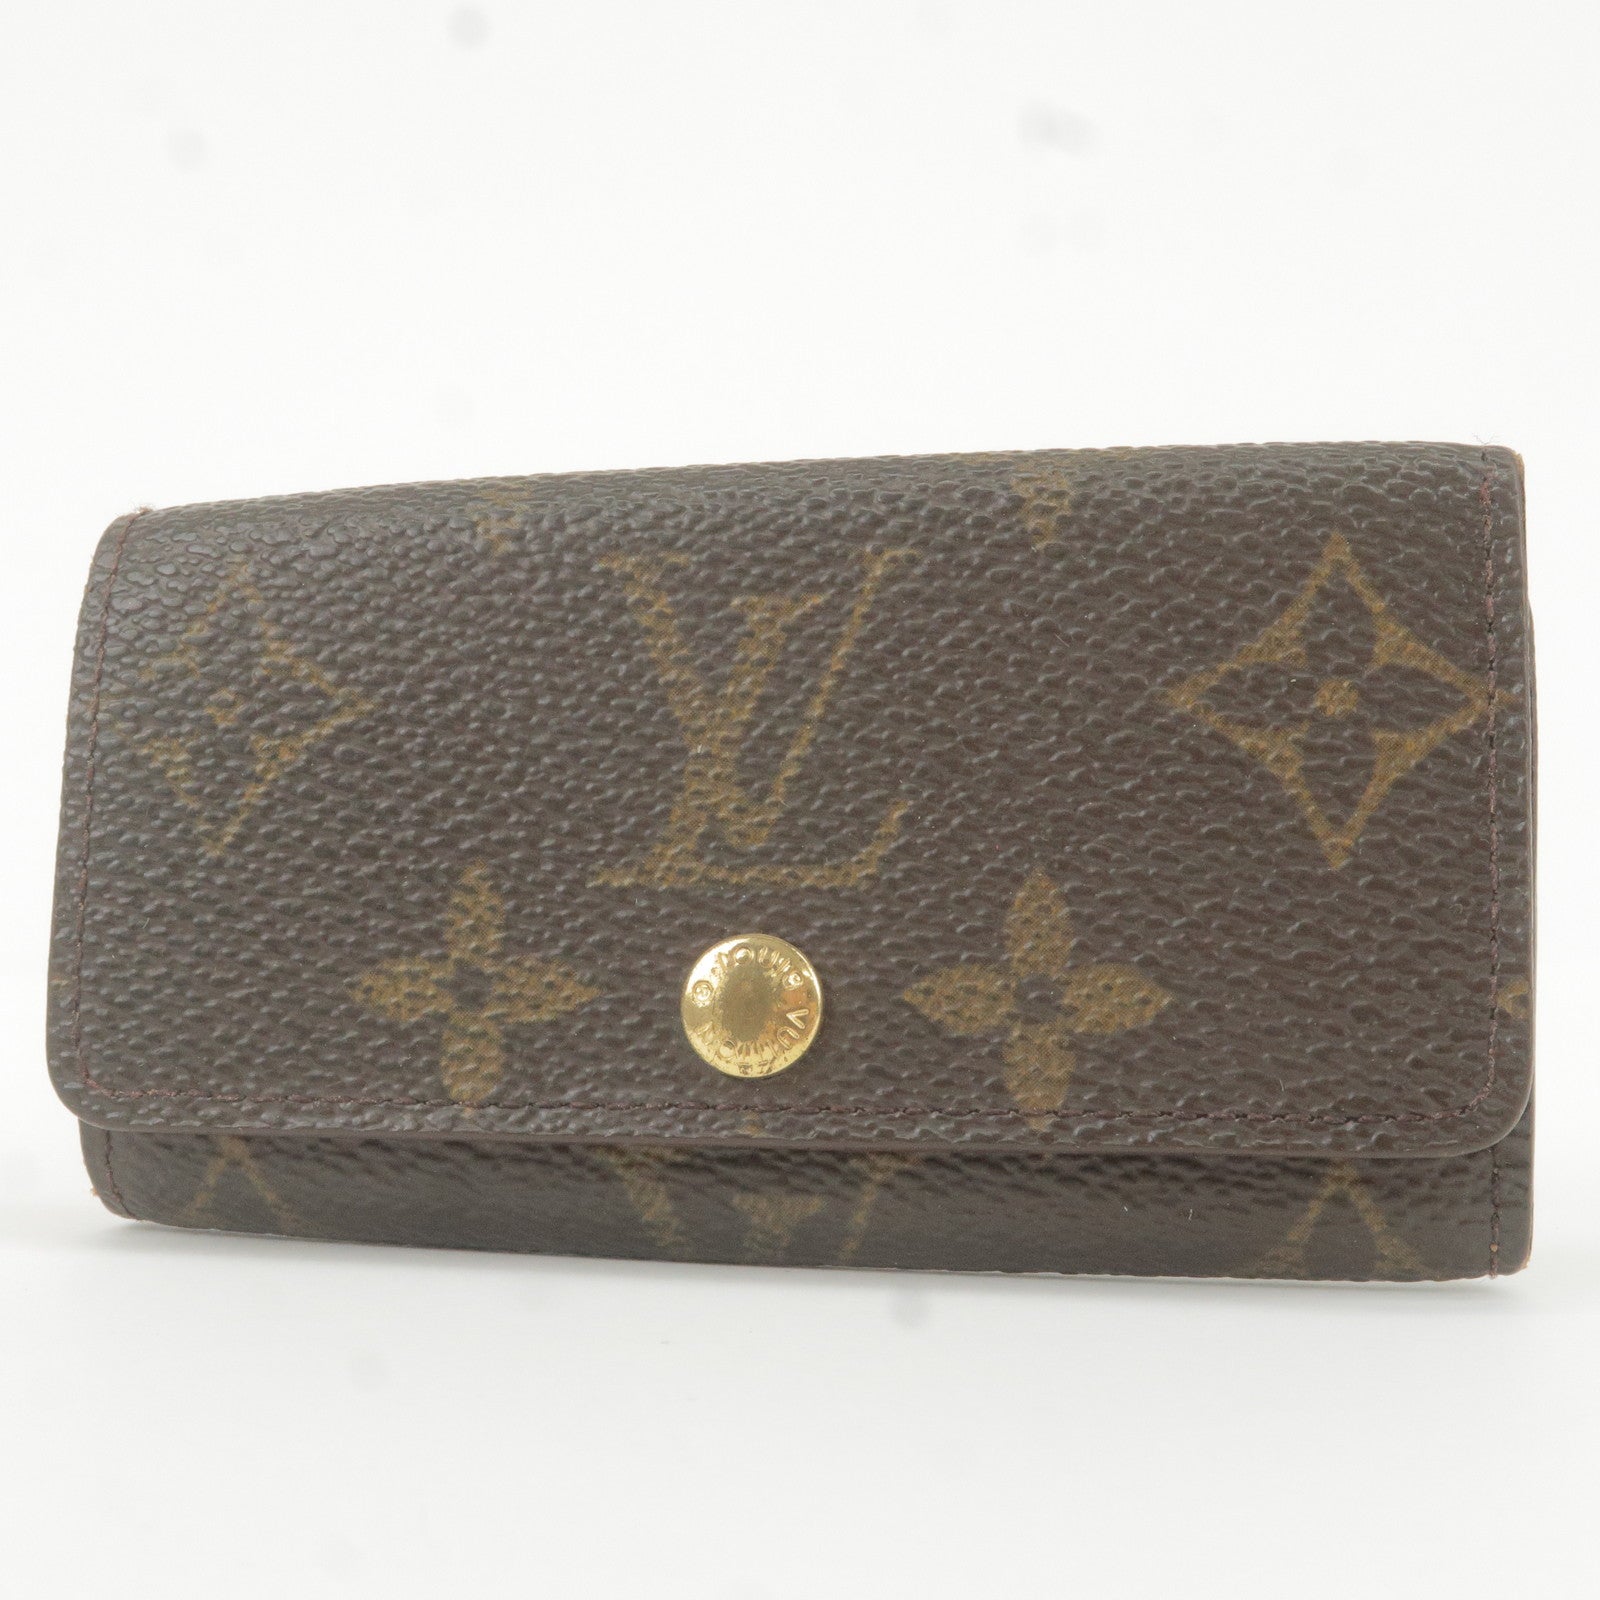 Louis - Case - M62631 – dct - 4 - Old - Style - Monogram - Vuitton